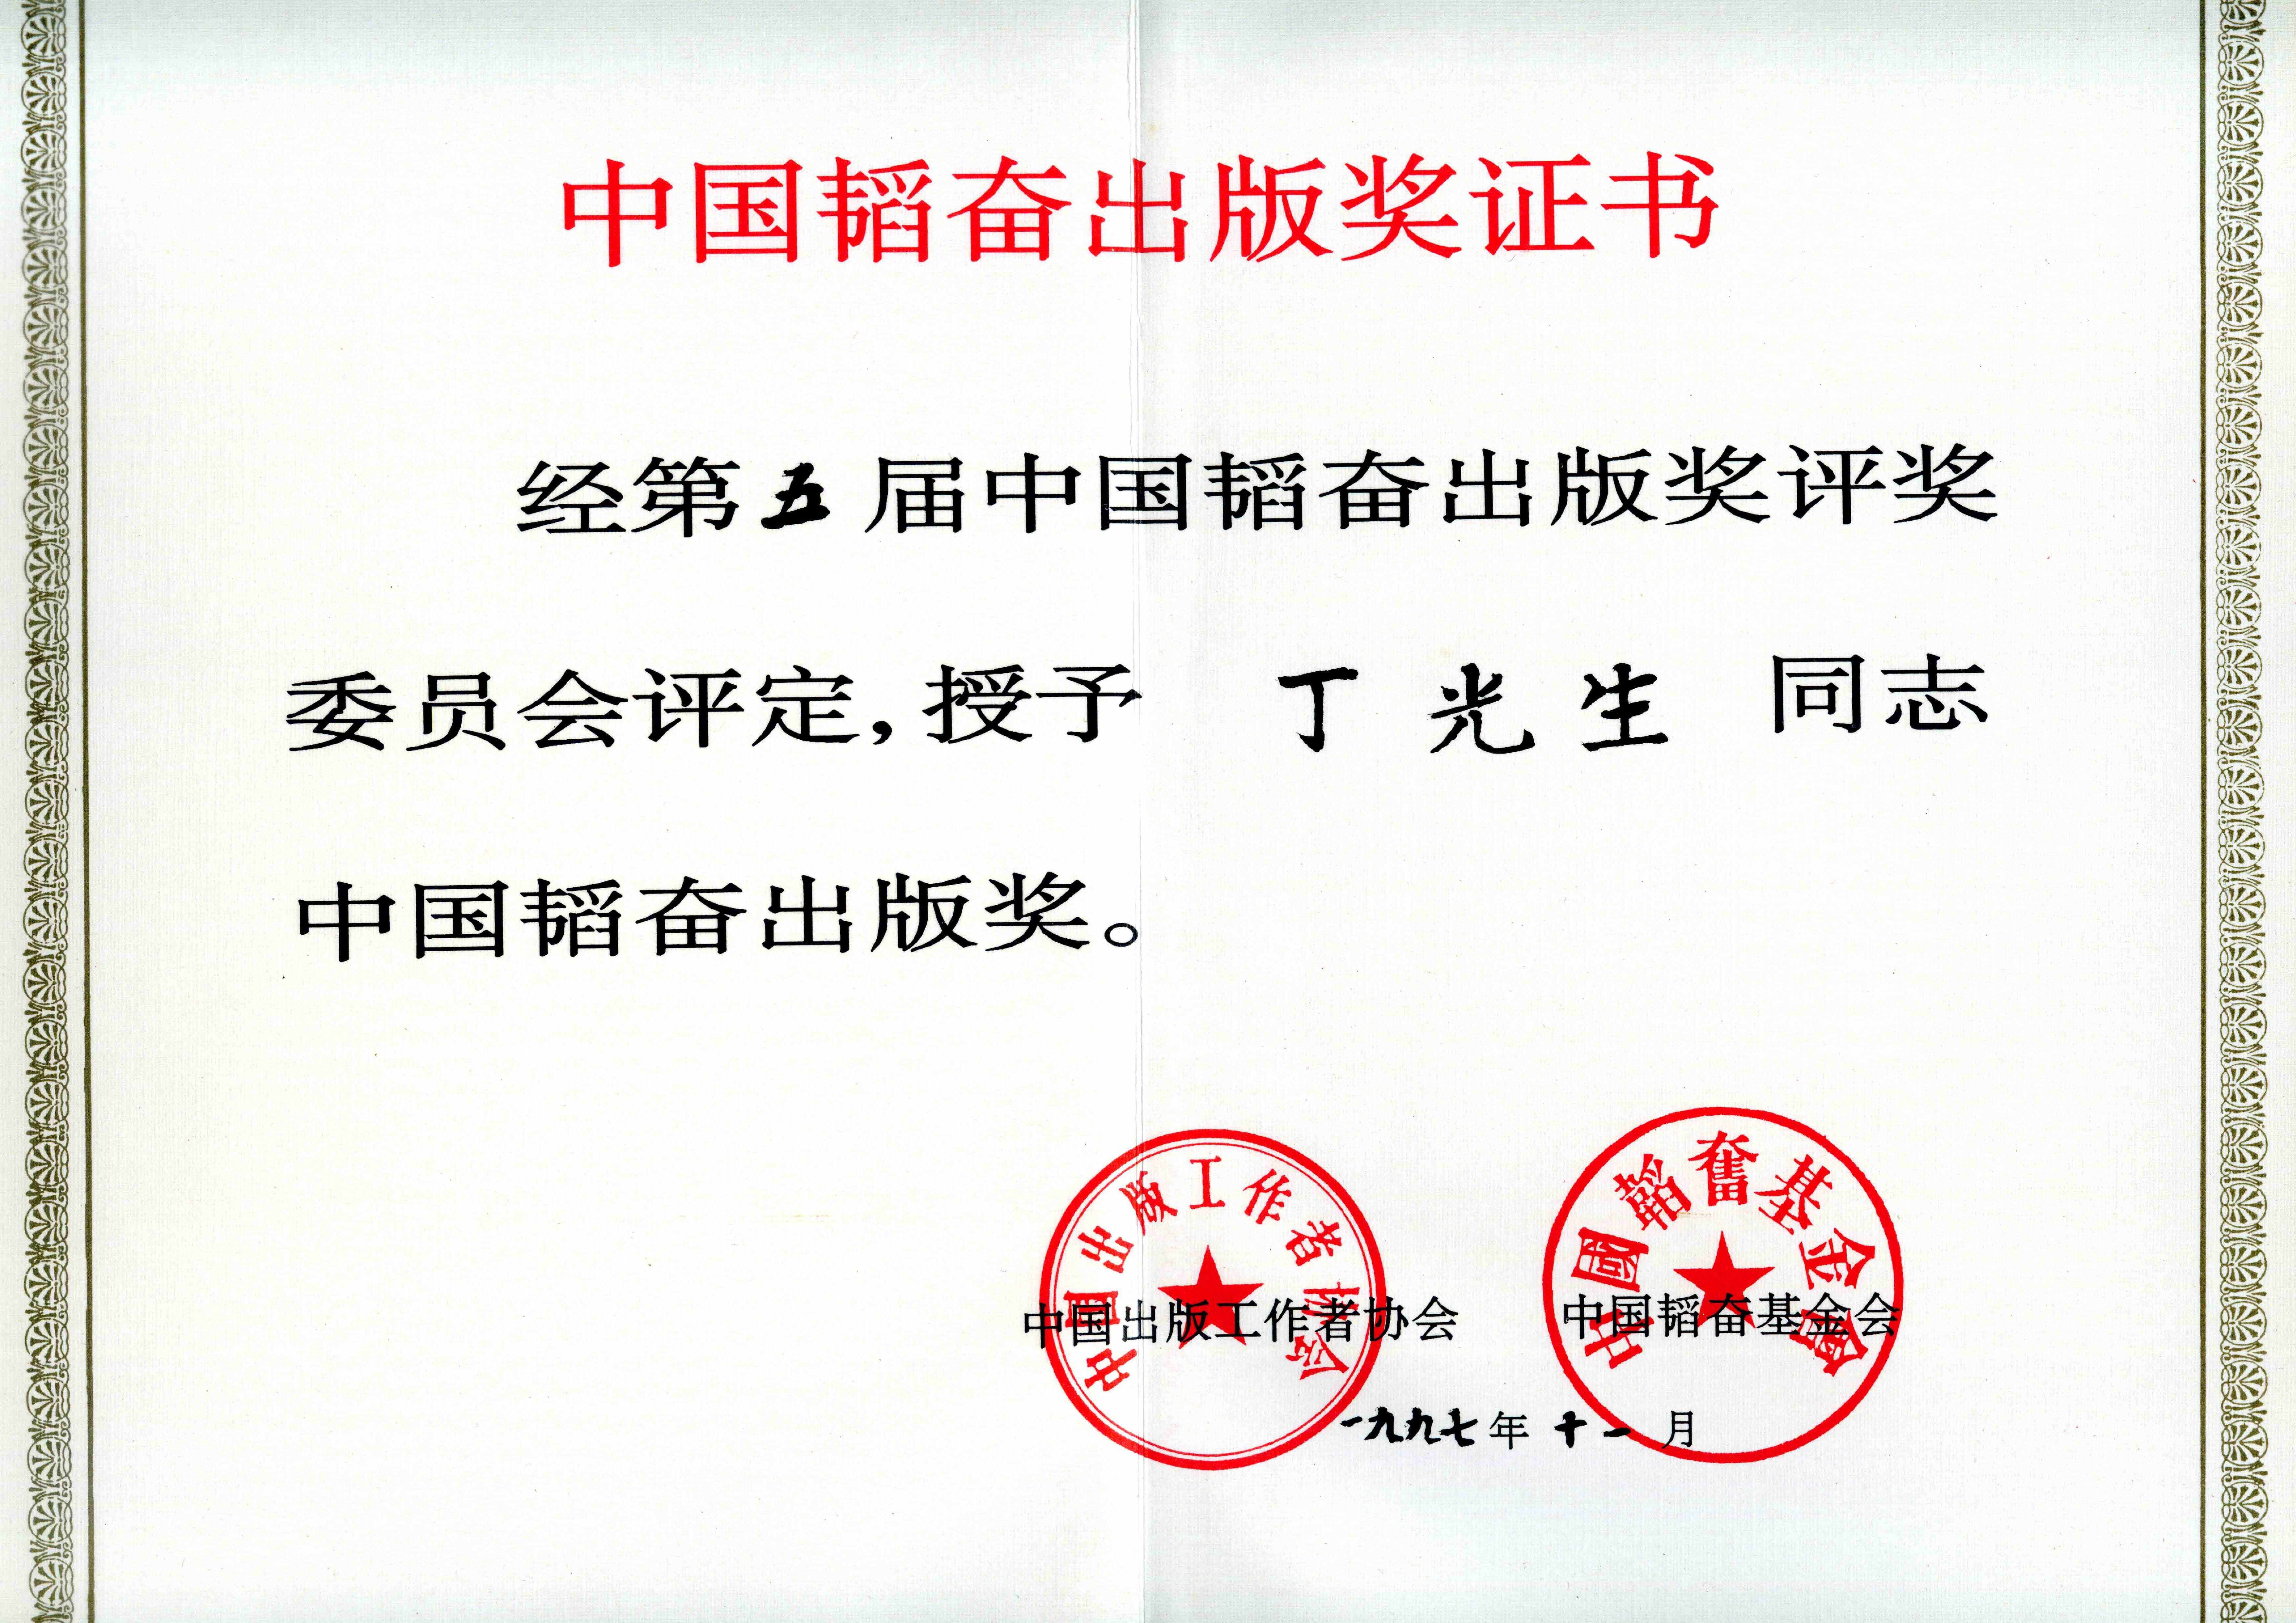 1997年11月，丁光生获中国韬奋出版奖